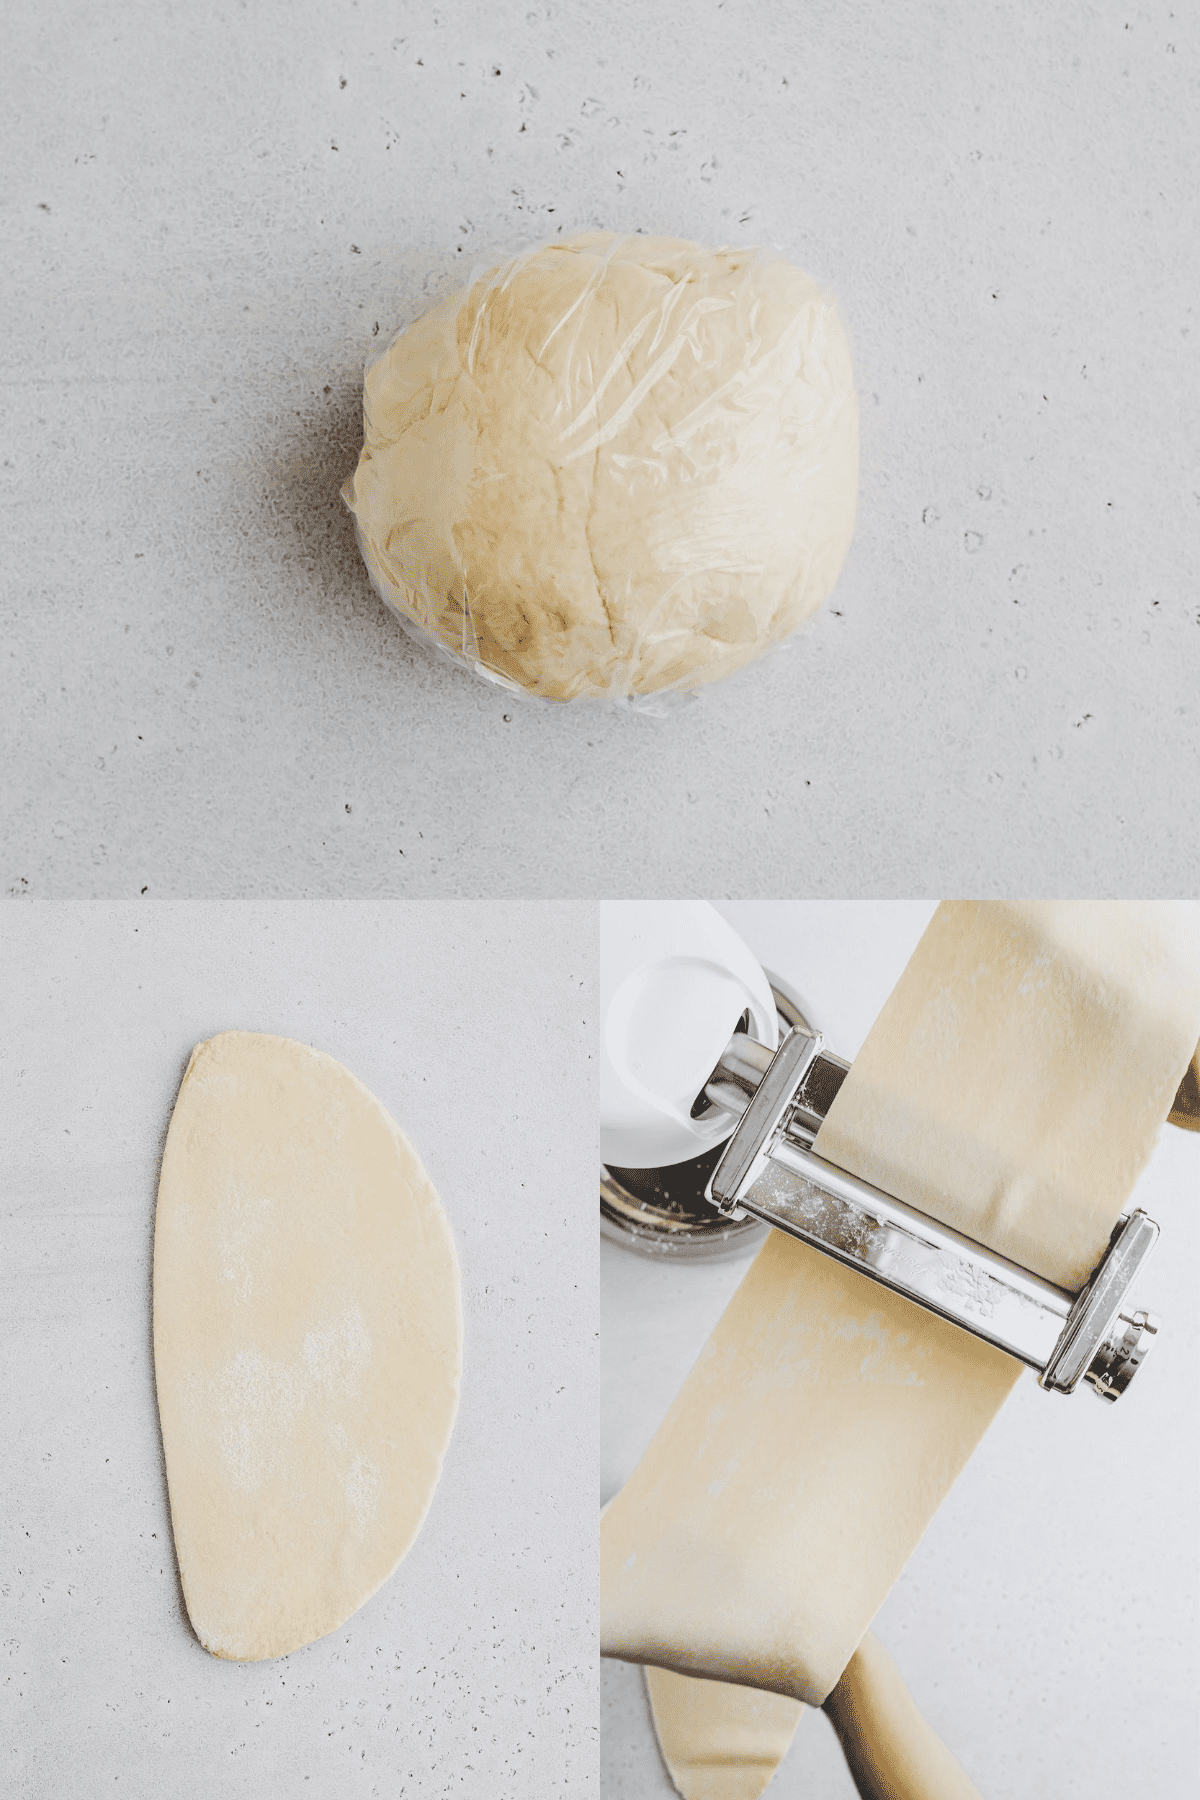 Homemade Pasta Dough Recipe Step 4-5